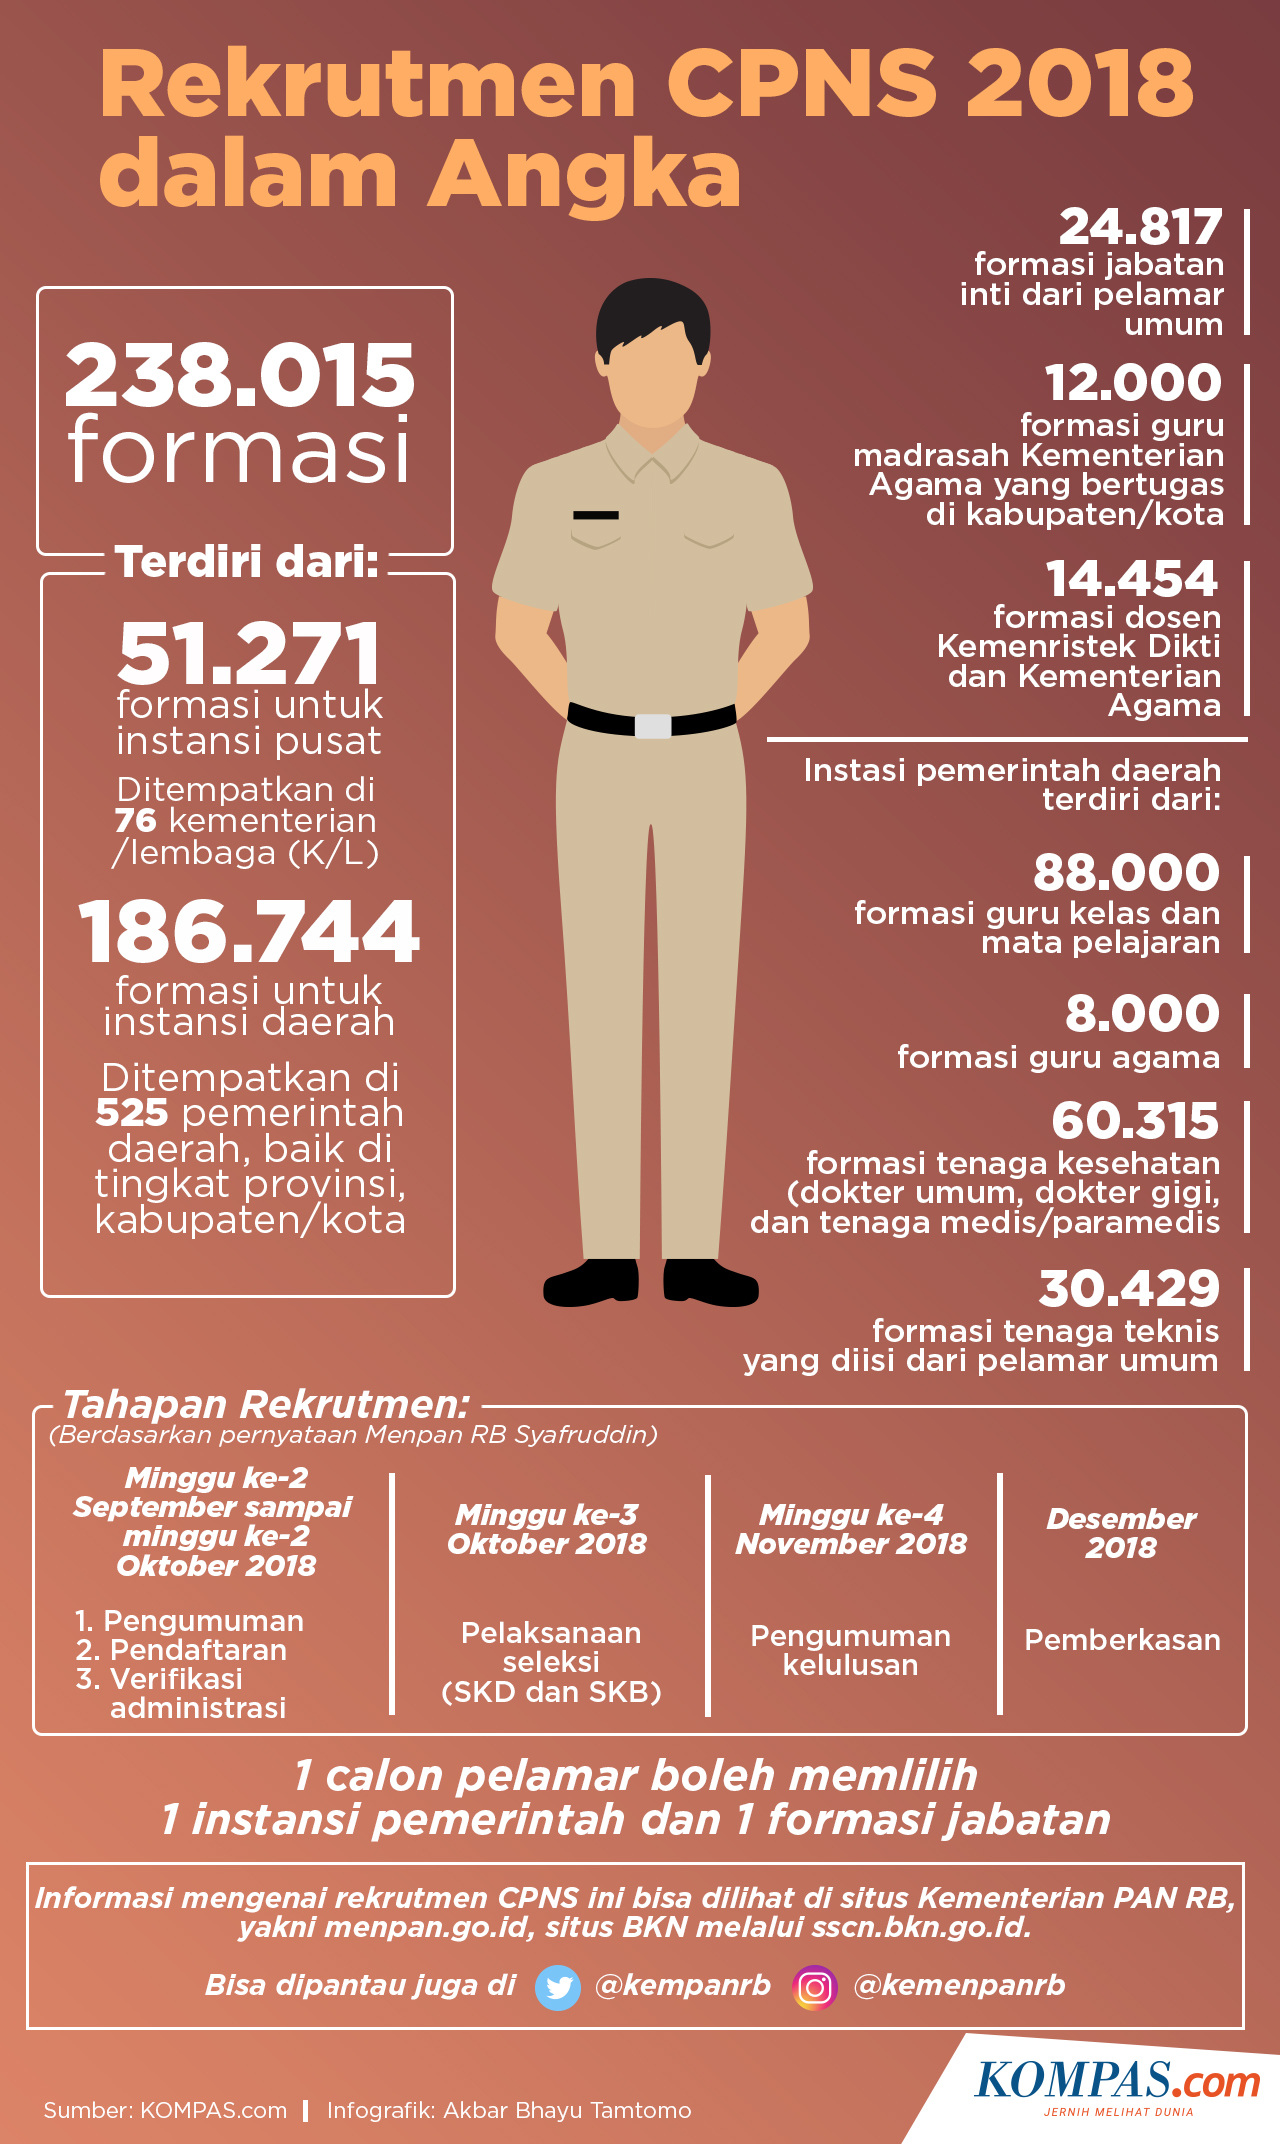 KOMPAS.com/Akbar Bhayu Tamtomo Infografik: Rekrutmen CPNS 2018 Dalam Angka